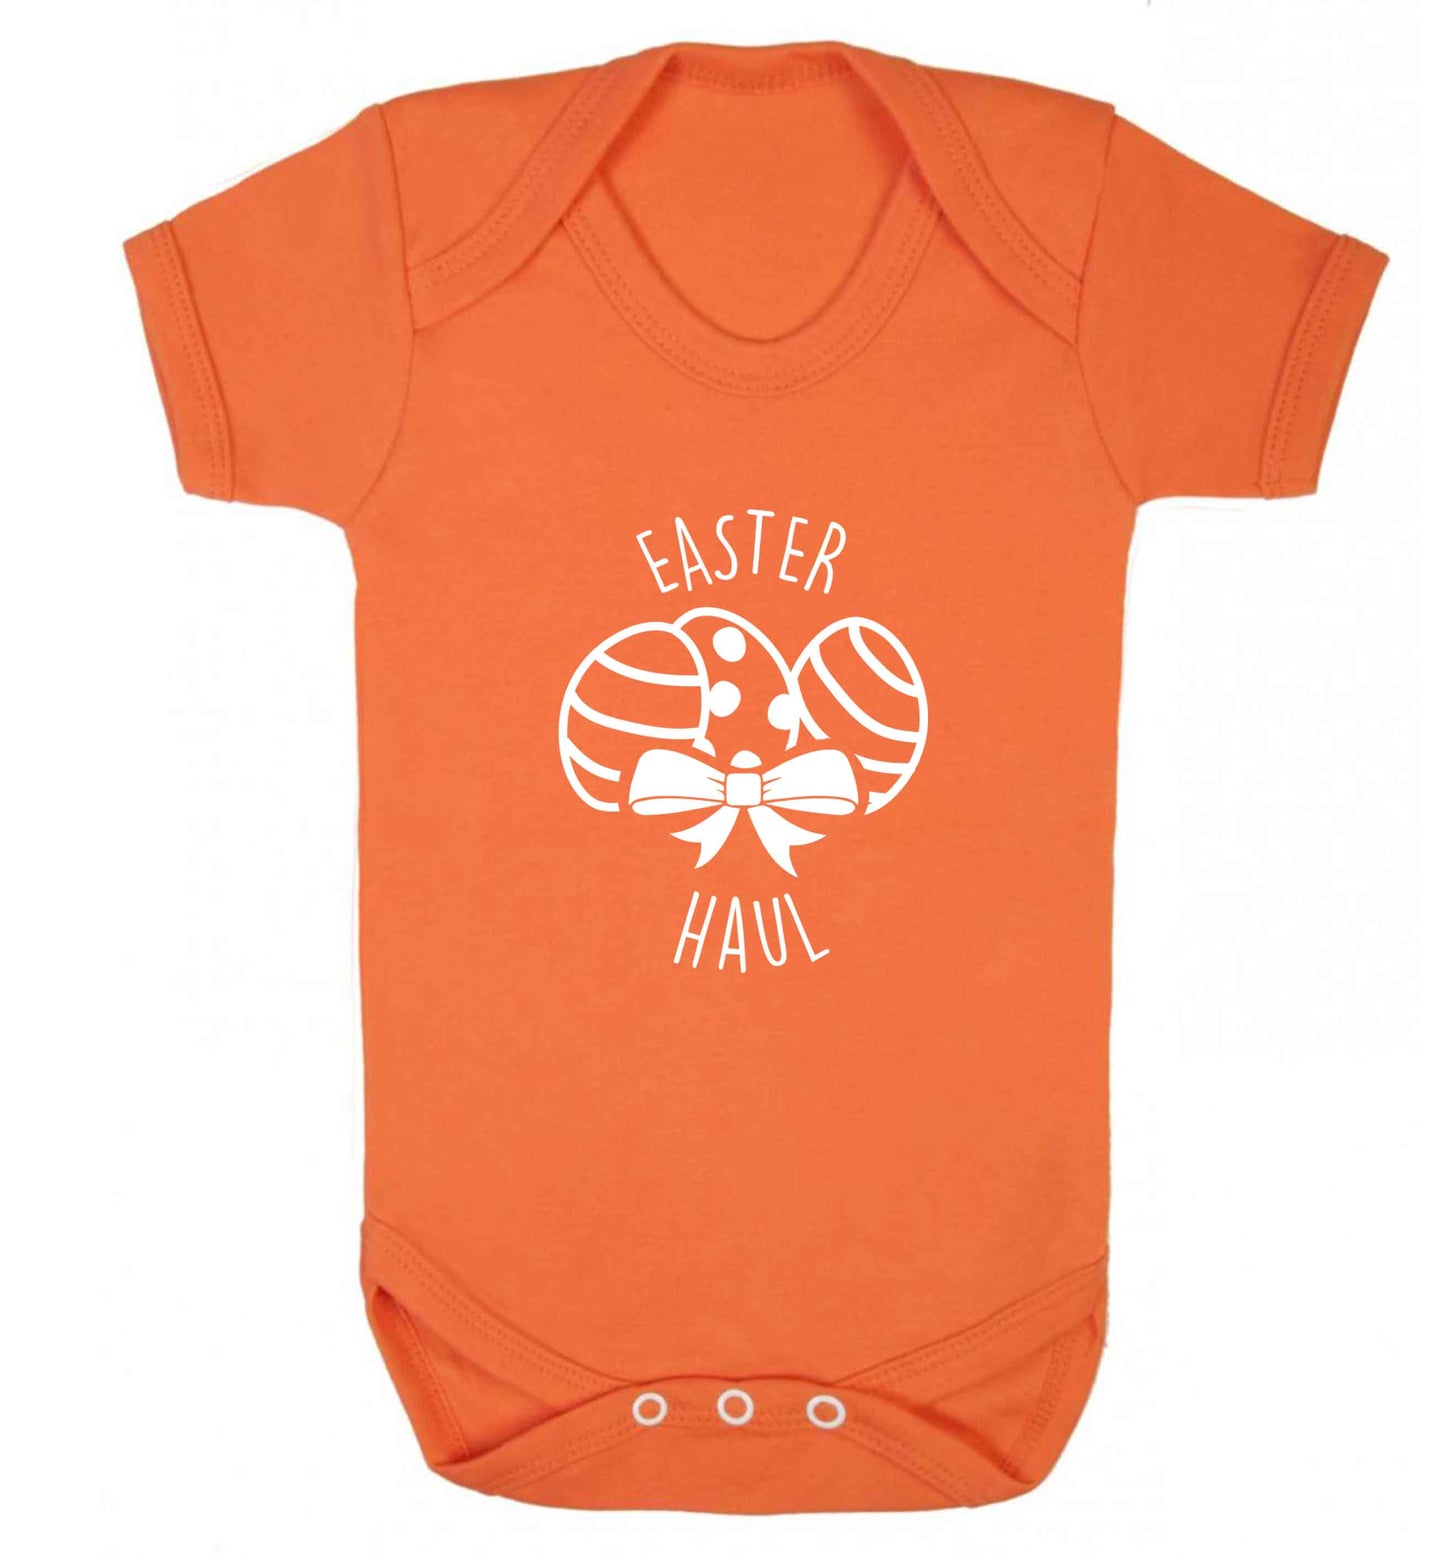 Easter haul baby vest orange 18-24 months